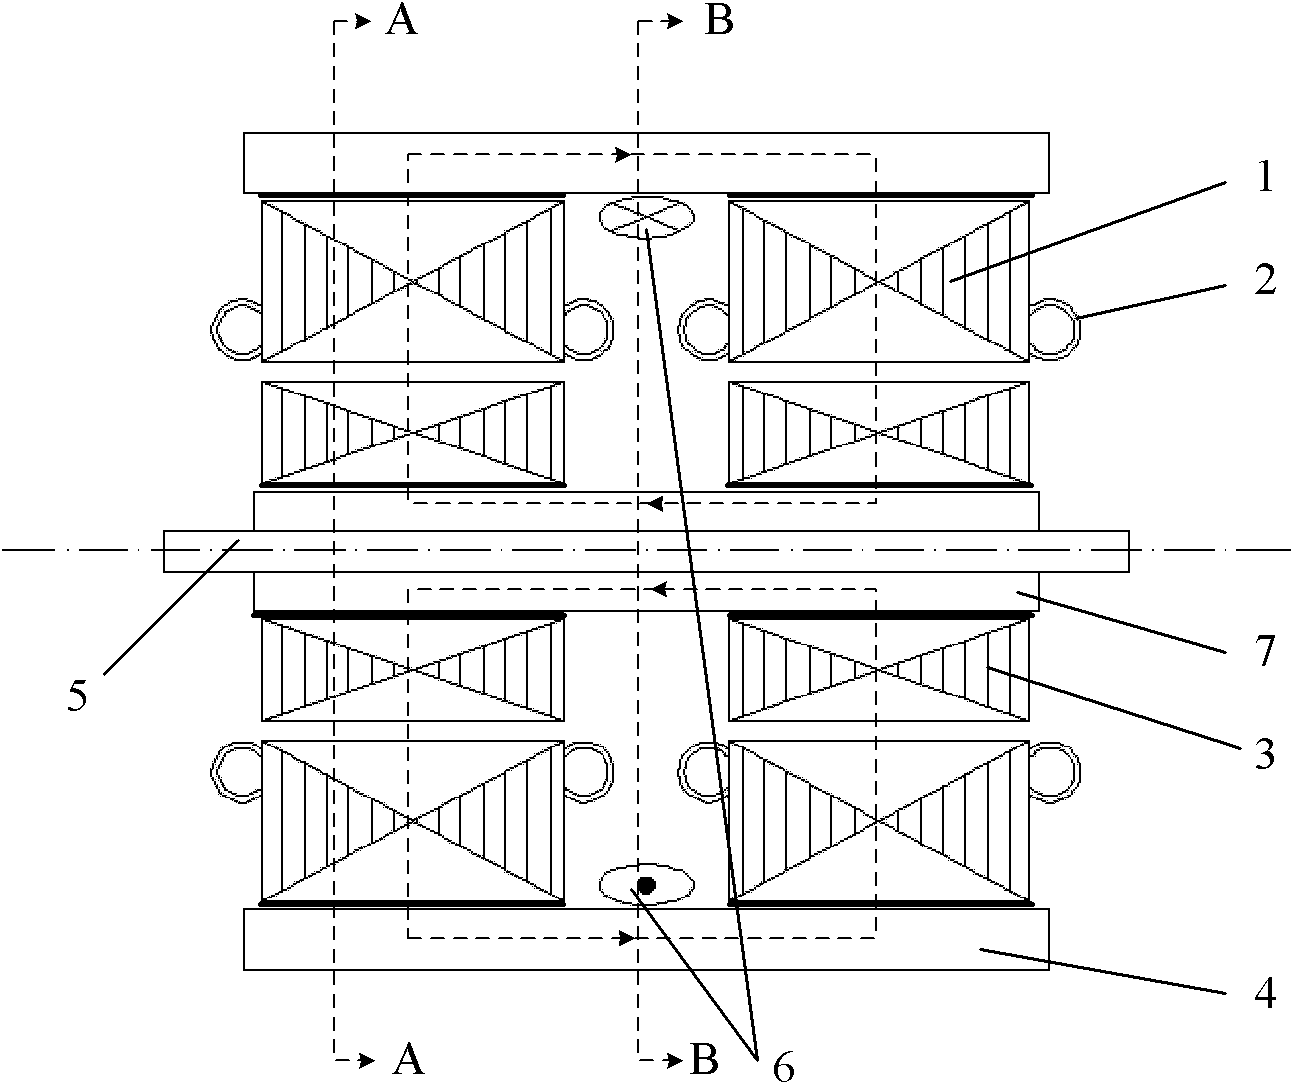 Axial excitation double salient pole motors